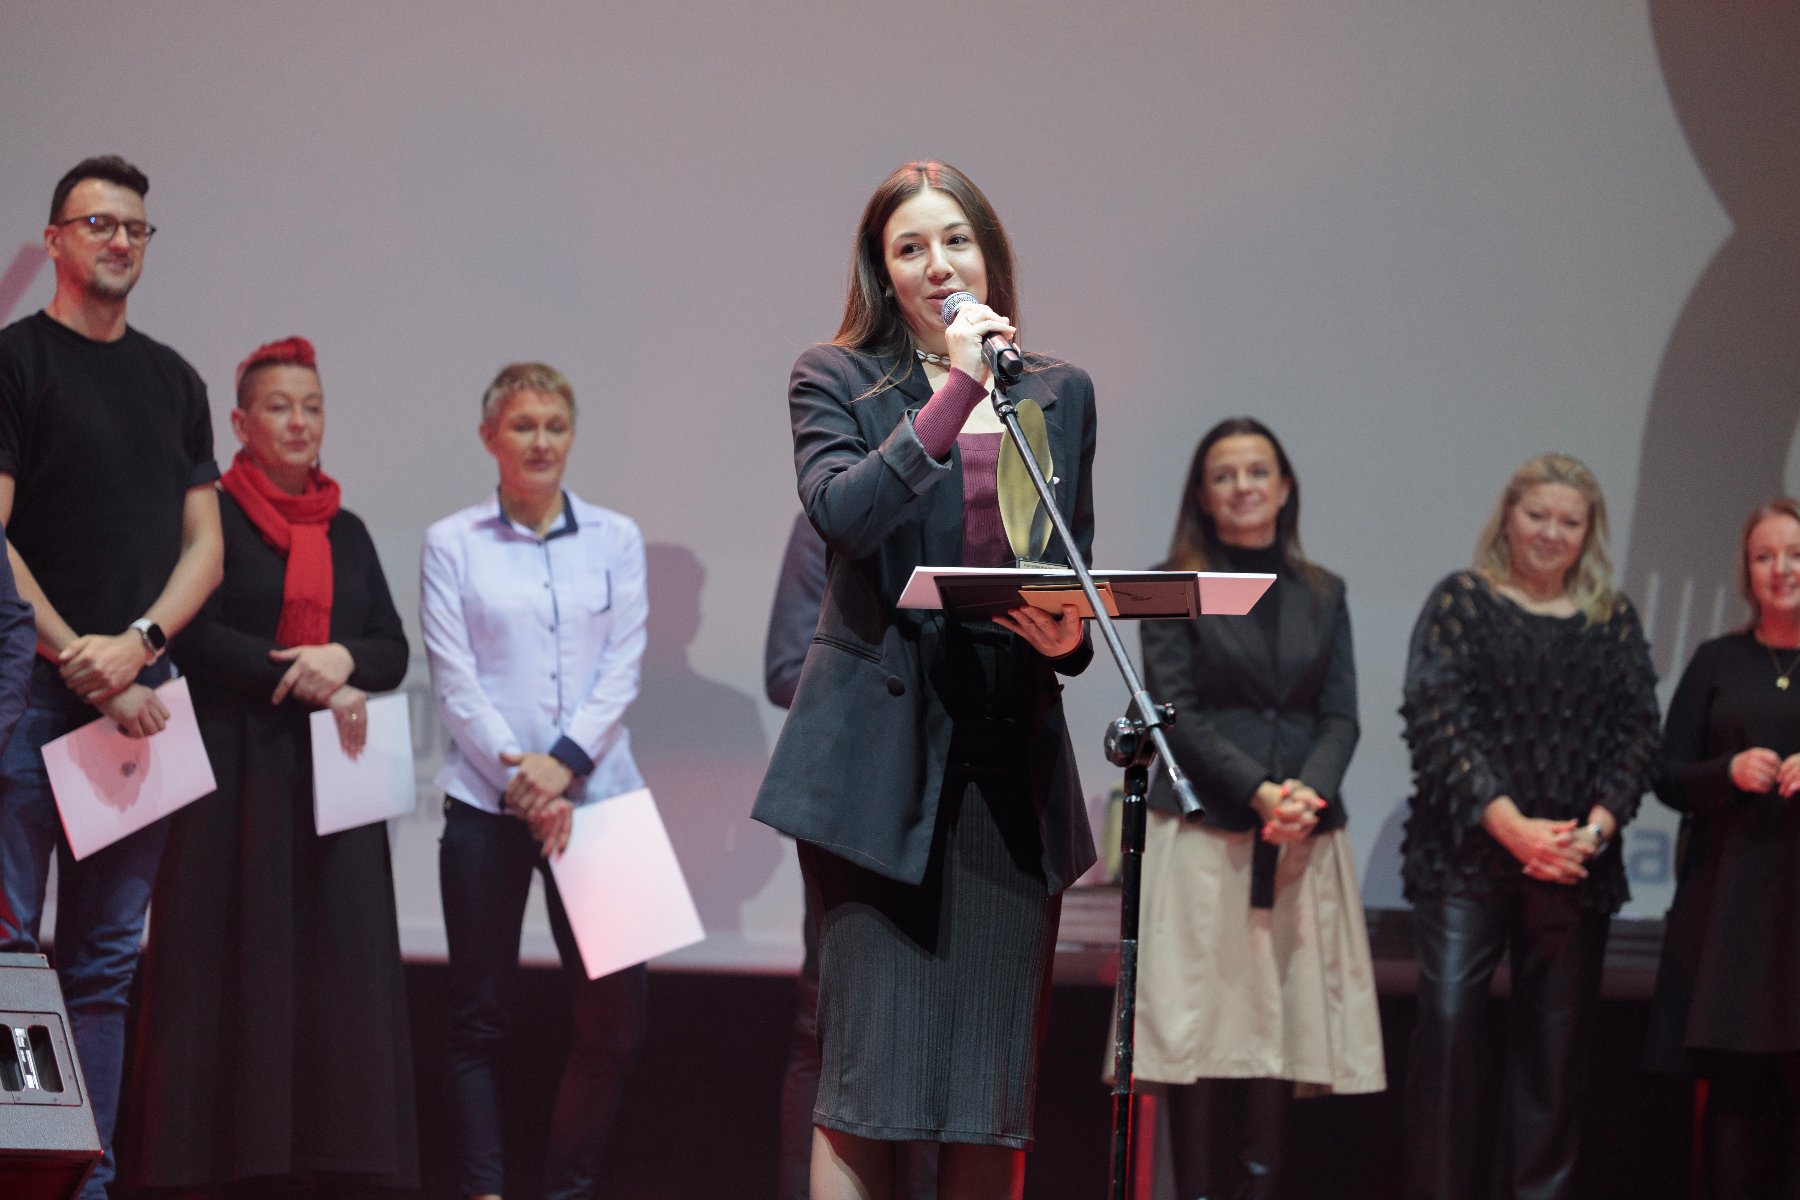 Na zdjęciu znajduje się kobieta - laureatka konkursu w kategorii indywidualnej - która stoi na scenie i przemawia do mikrofonu